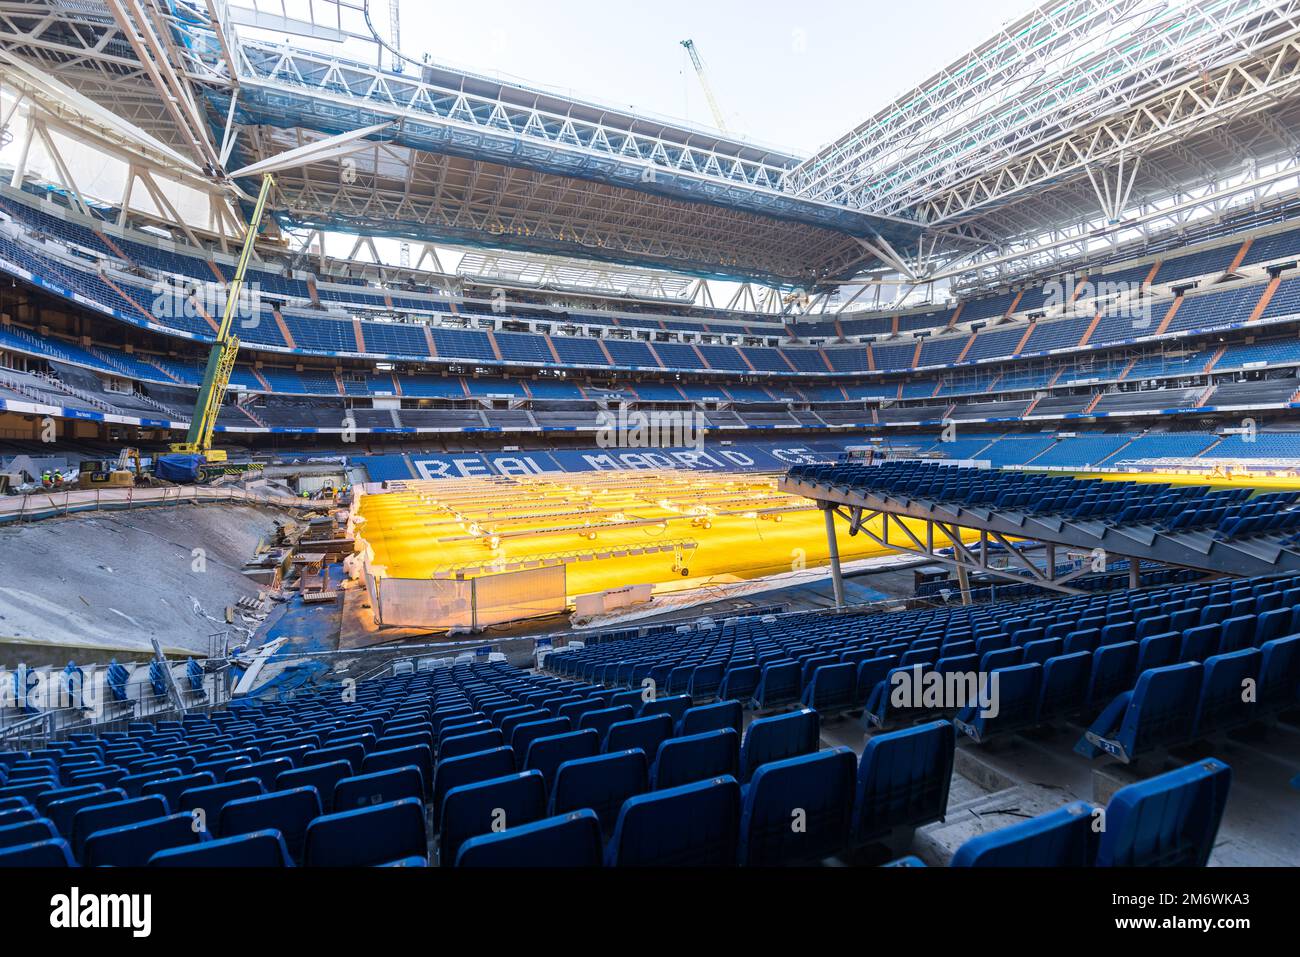 Madrid, España - 04 de enero de 2023: Interior del estadio de fútbol Santiago Bernabéu, Real Madrid, durante obras de renovación. Foto de stock